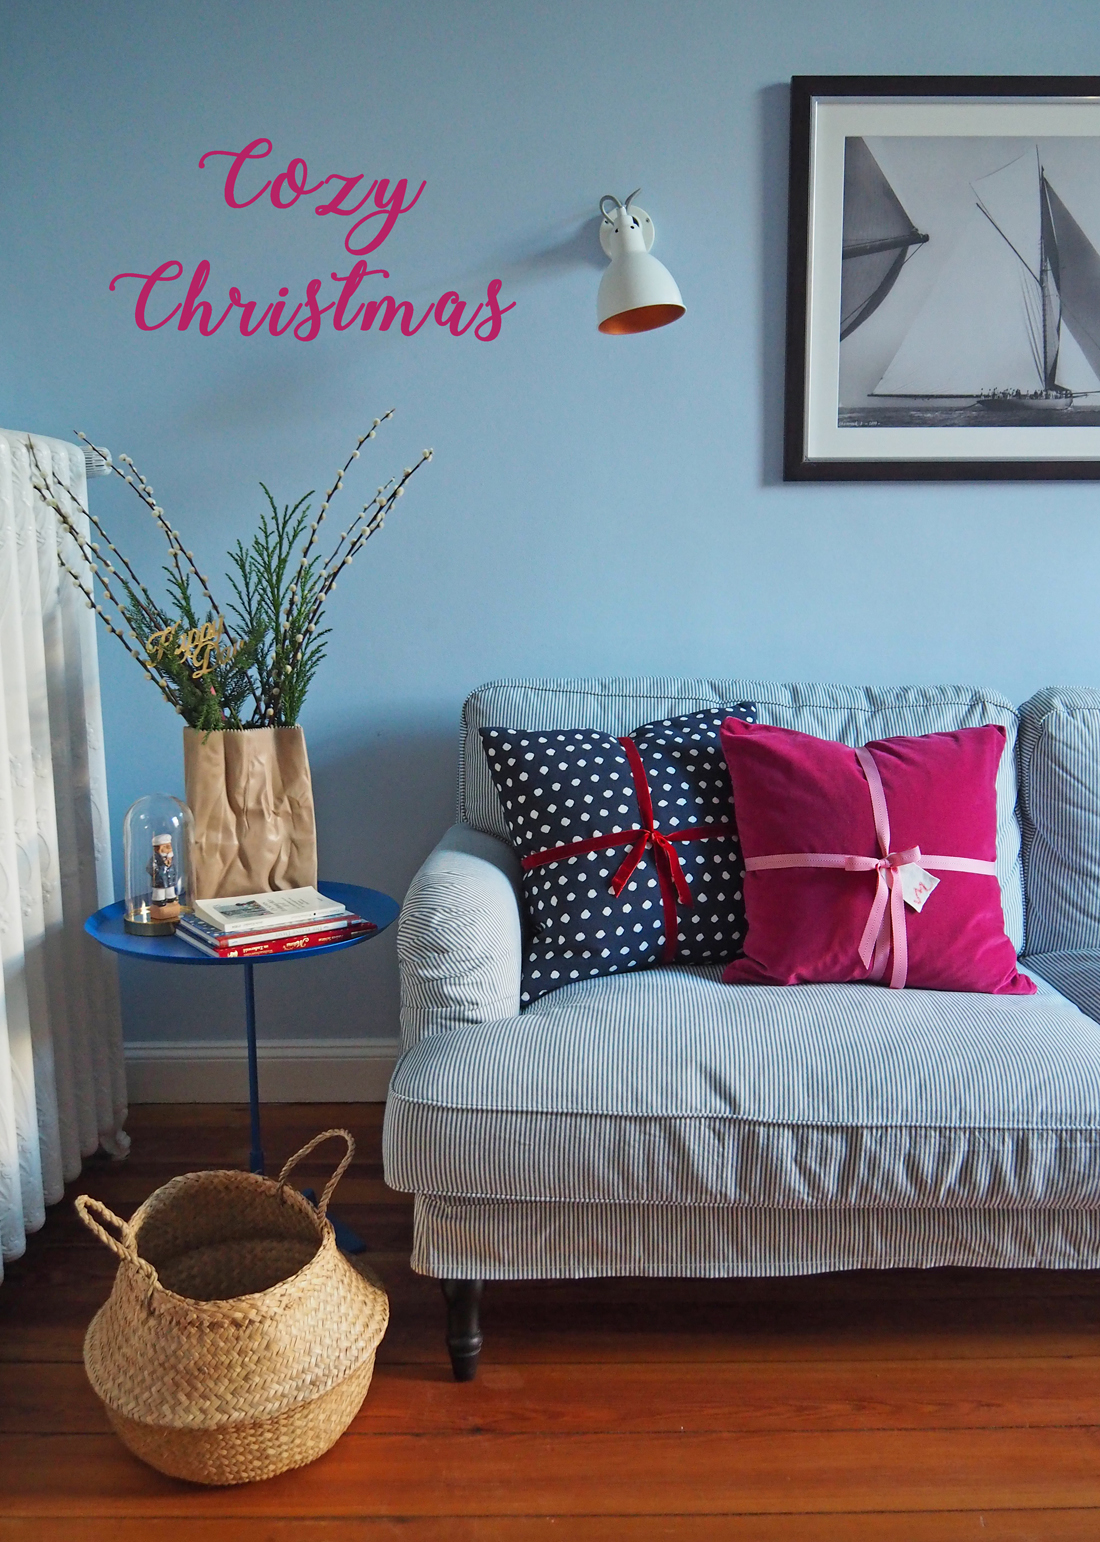 Schnelle und günstige Weihnachtsdeko - Kissen mit hübschen Geschenkbändern verziert. Sehen aus wie Geschenke. Kissenhülle von H&M Home by happyhomeblog.de